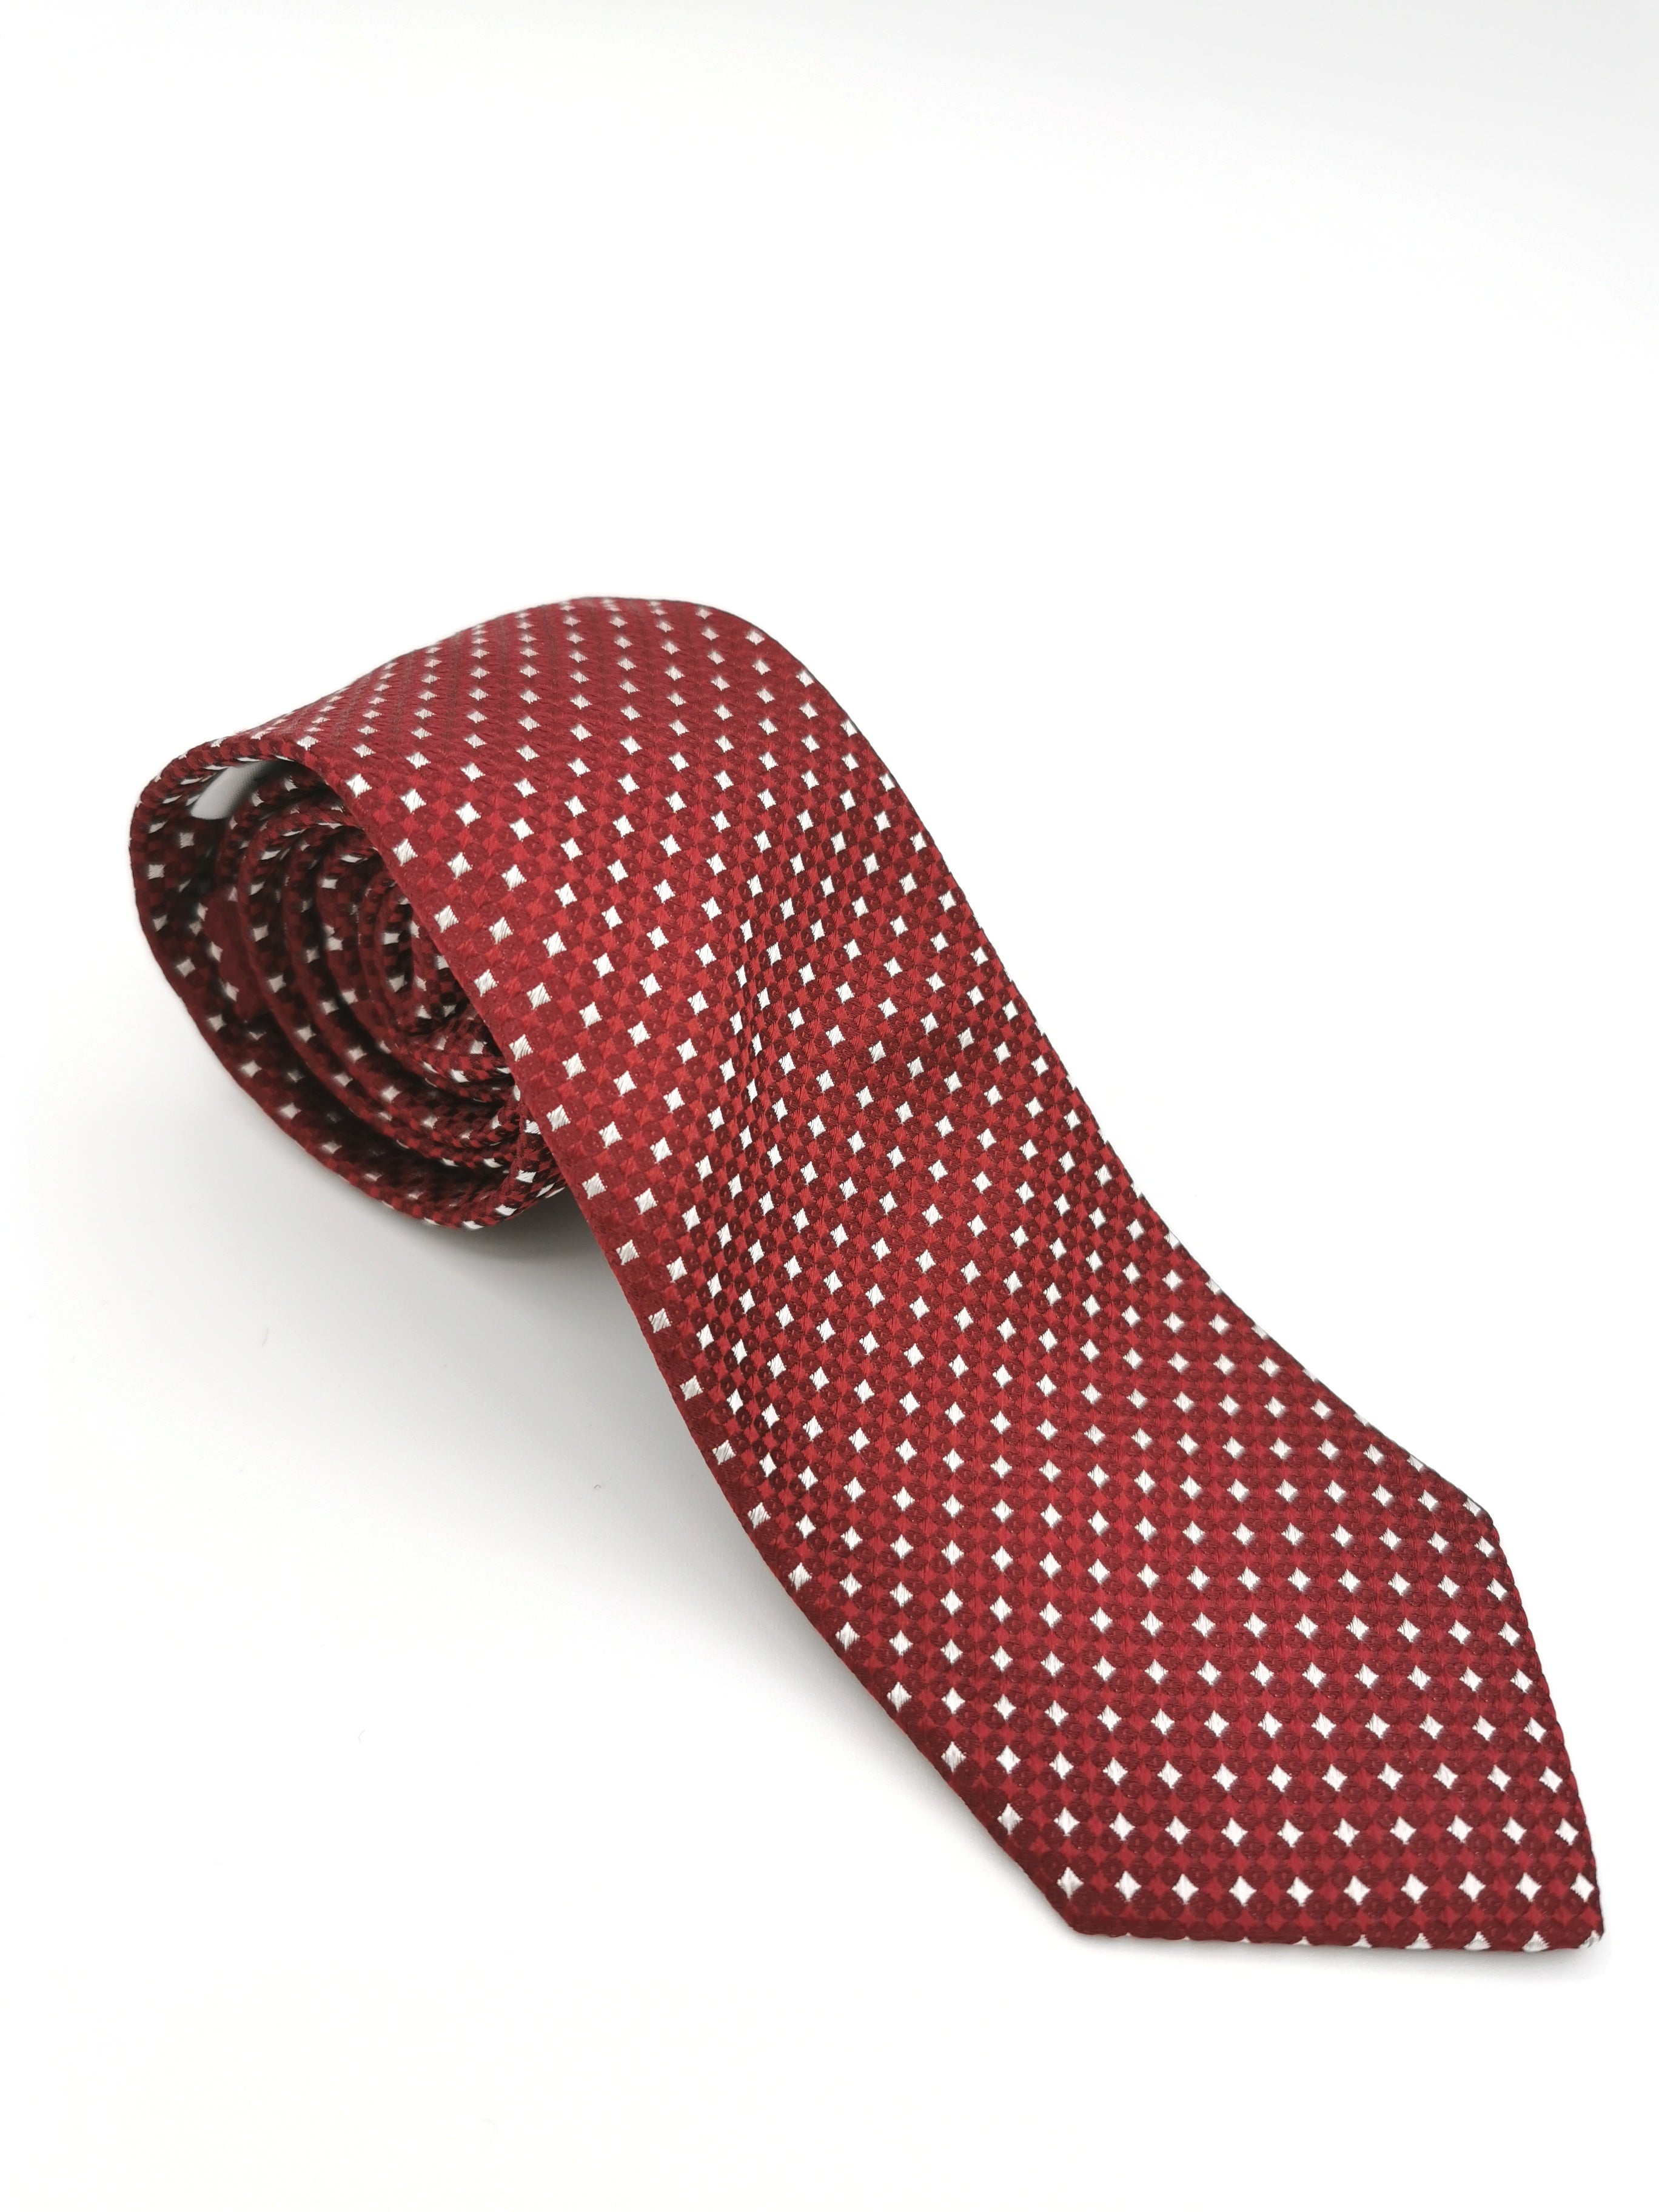 Cravate Ferala à motif damier rouge et blanc ǀ The Green Lord